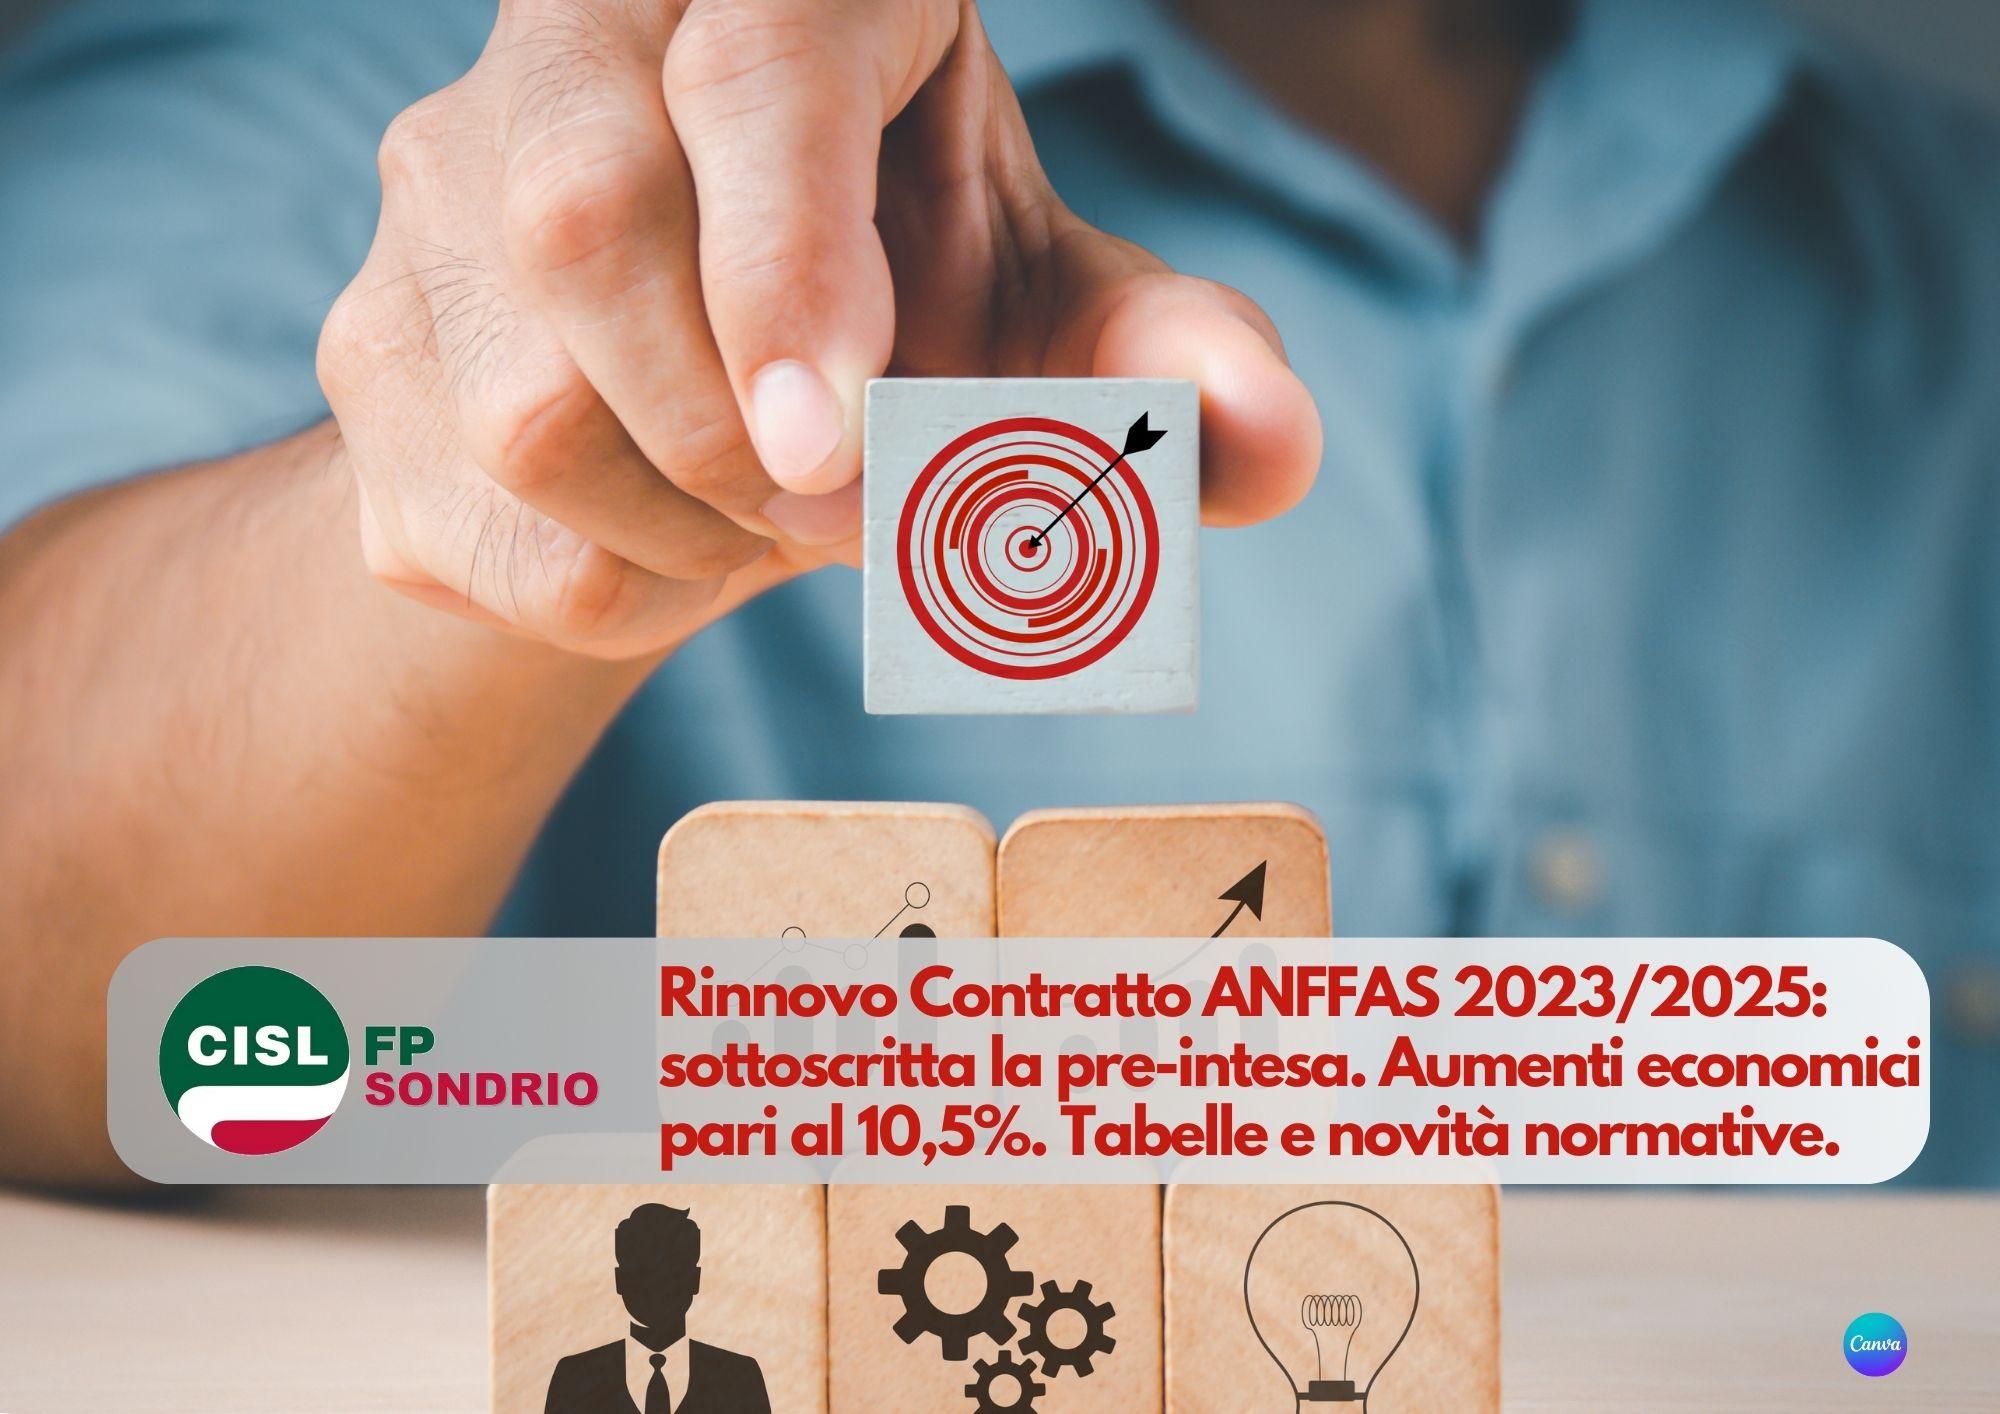 CISL FP Sondrio. Rinnovo Contratto ANFFAS 2023/2025: sottoscritta la pre-intesa. I dettagli